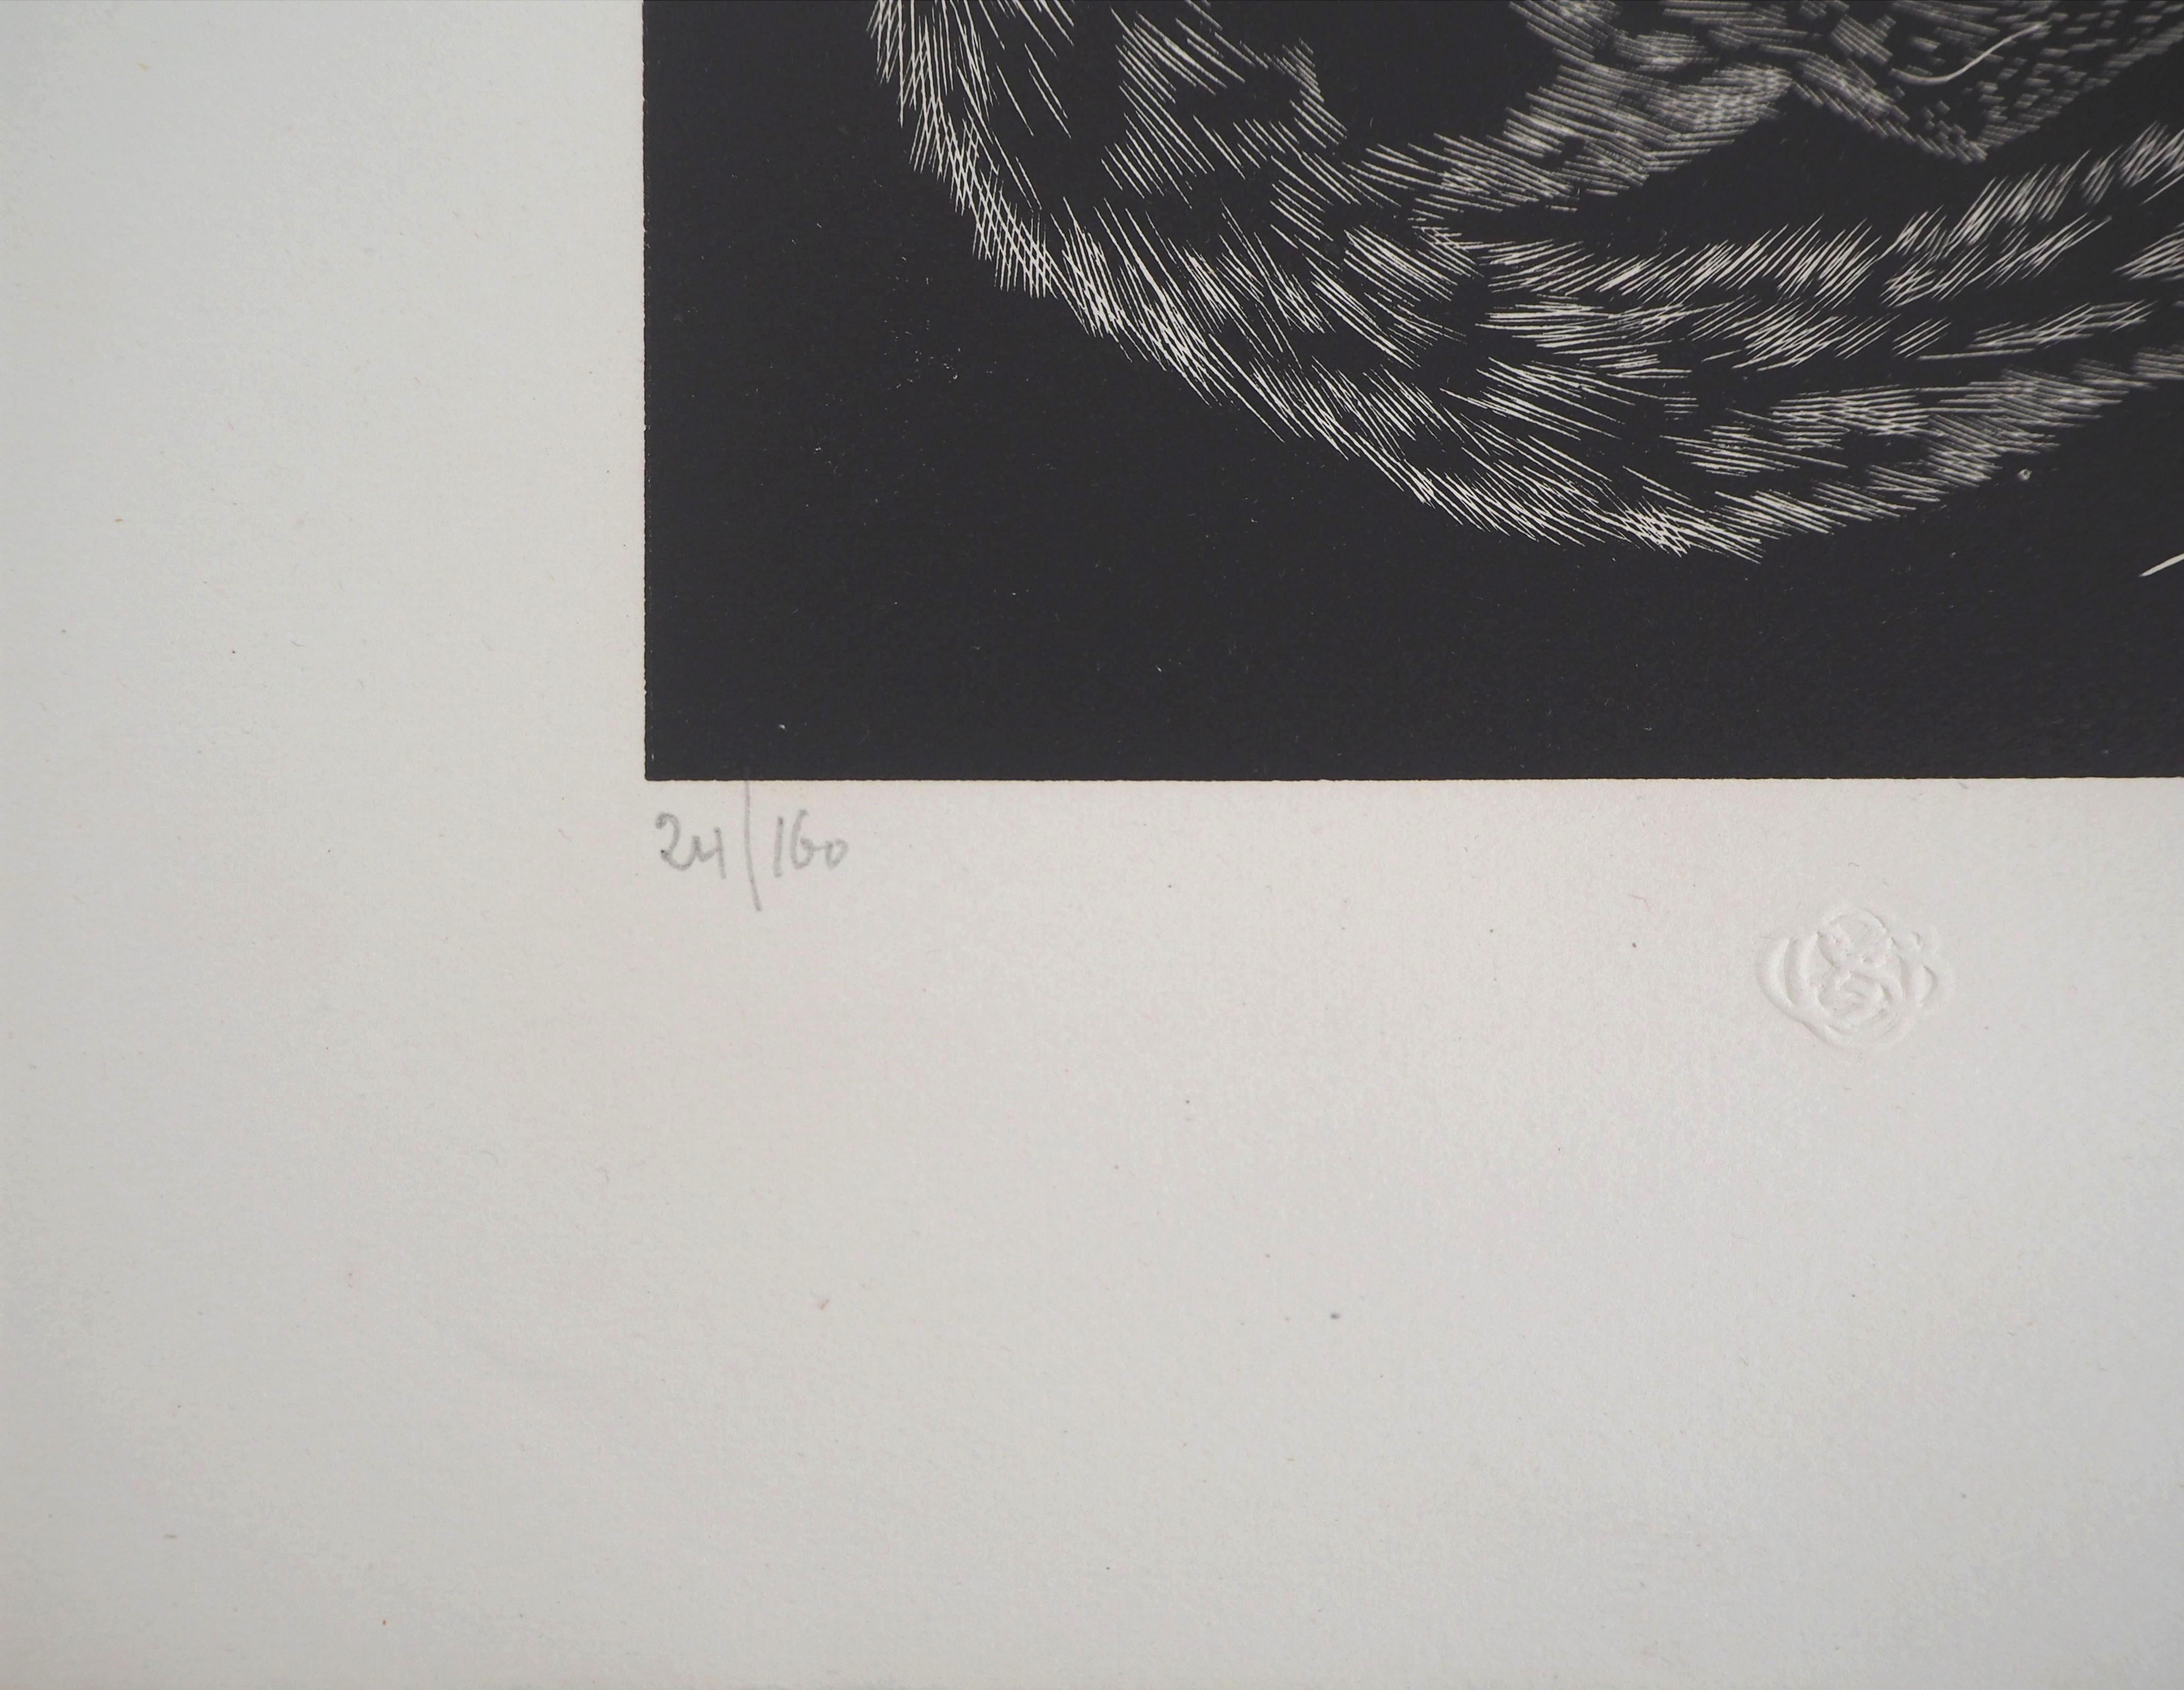 Leonard Tsuguharu FOUJITA
Chat, 1927

Gravure sur bois originale
Signé à l'encre
Numéroté /160
Porte le cachet aveugle de l'éditeur (Lugt 1140a)
Sur Vellum 32.5 x 25.5 cm (c. 13 x 10 inch)

RÉFÉRENCES : Catalogue raisonné : Buisson #27-03

Excellent